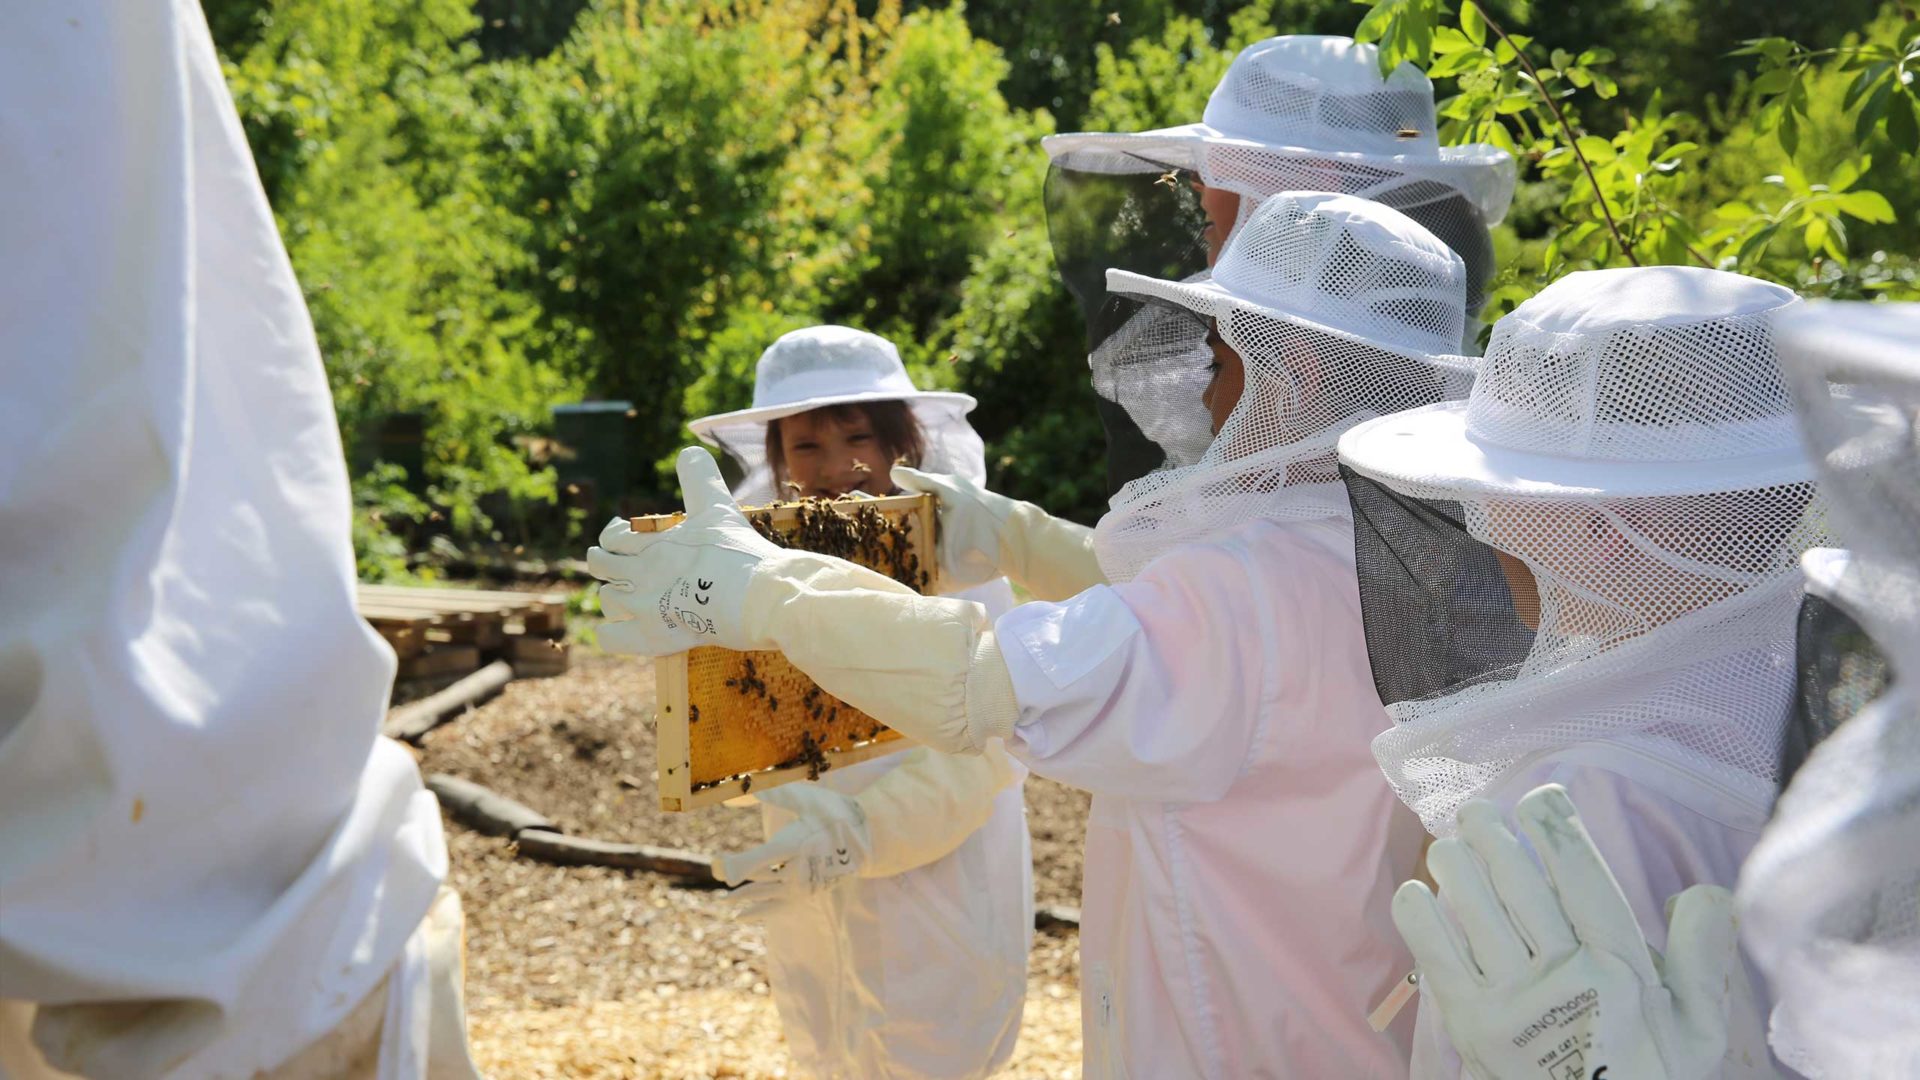 Bienenlehrpfad: Aktion Mahlzeit bei den Imkern. Die Kinder dürfen in echte Imkeranzüge anziehen und kommen ganz nah an die Bienen heran.